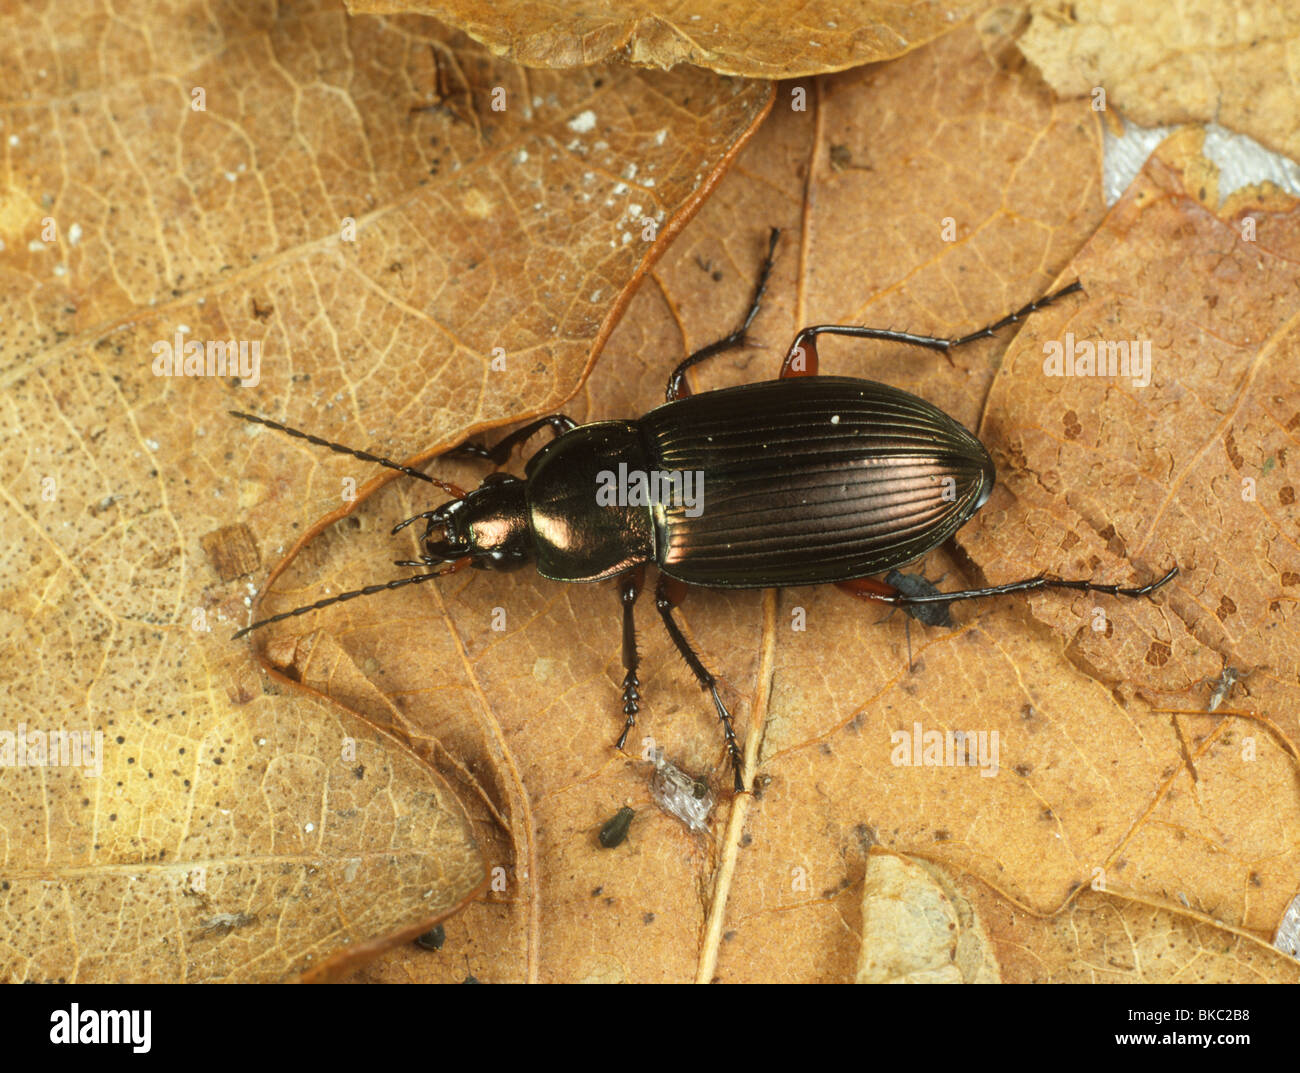 Tierra de depredadores Poecilus cupreus (escarabajos) adulto Foto de stock